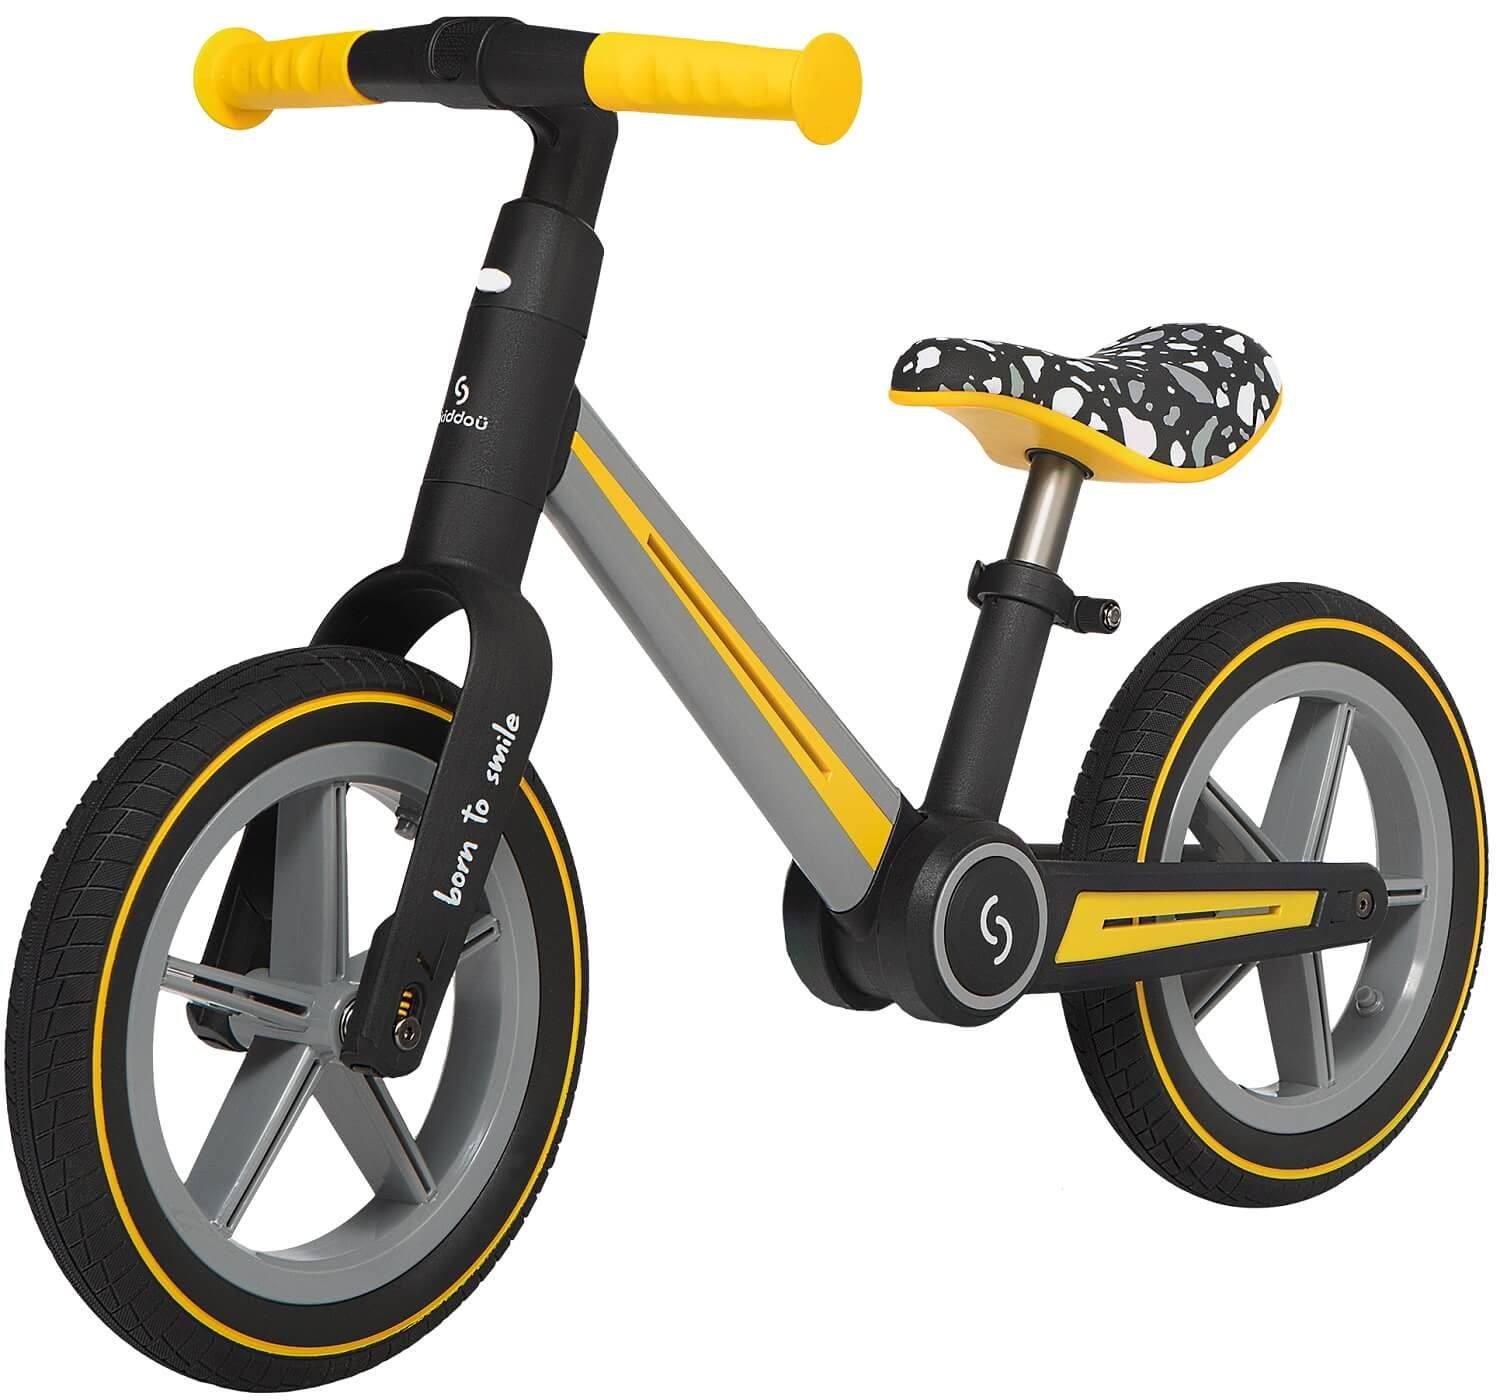 Skiddoü Laufrad Ronny faltbares Laufrad für Kinder bis 30 kg verstellbar in 3 Farben 12 Zoll, inkl. Malbuch gelb